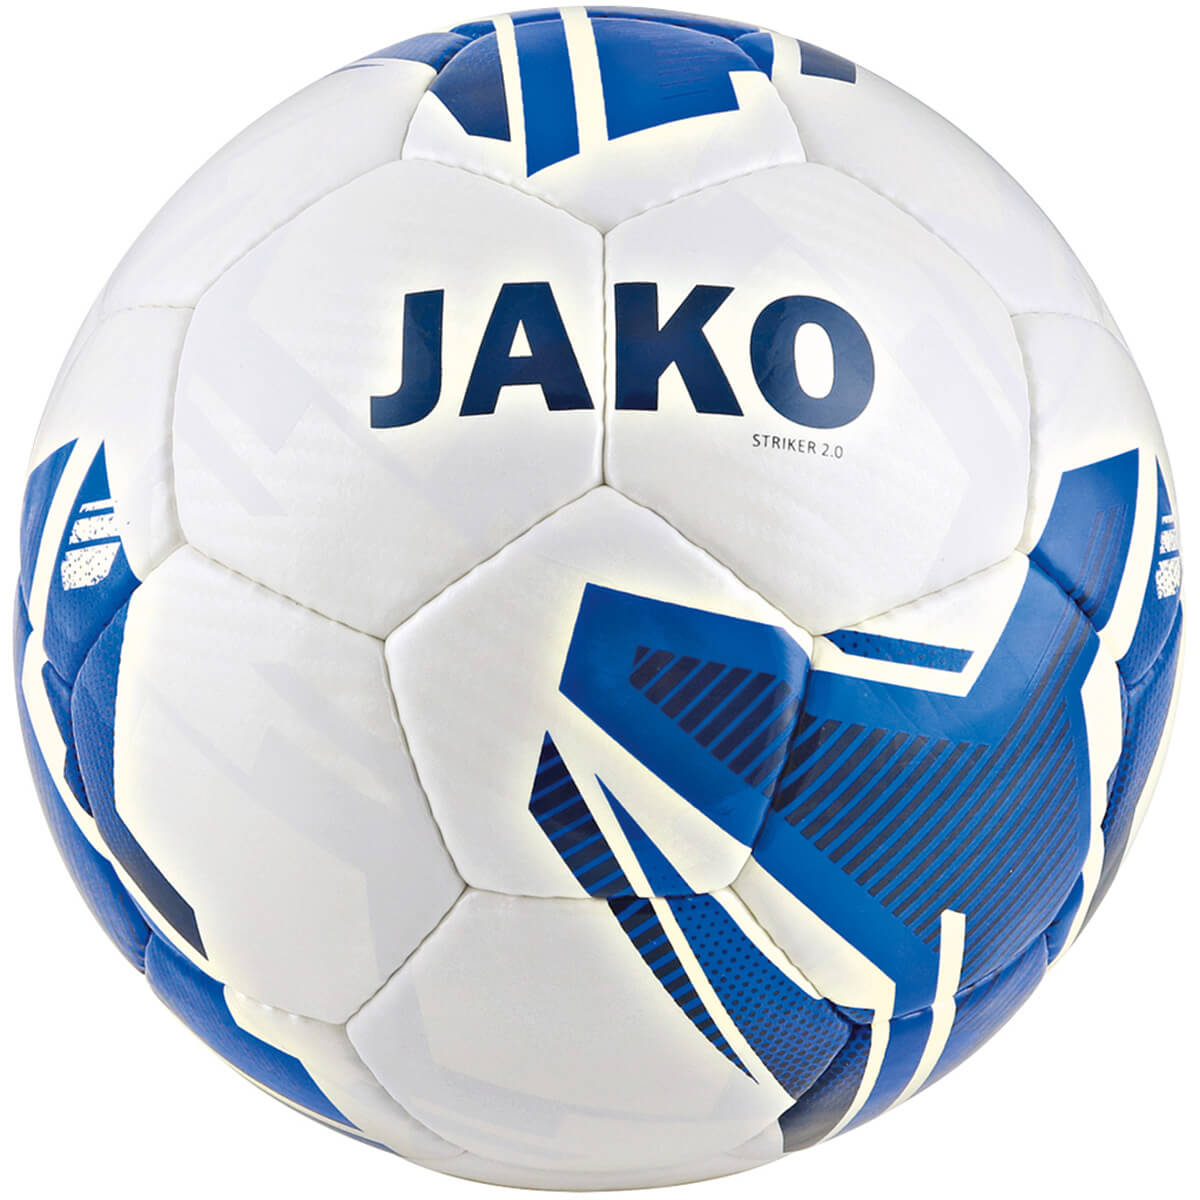 JAKO 2353-04 Training Ball Striker 2.0 White/Royal Blue